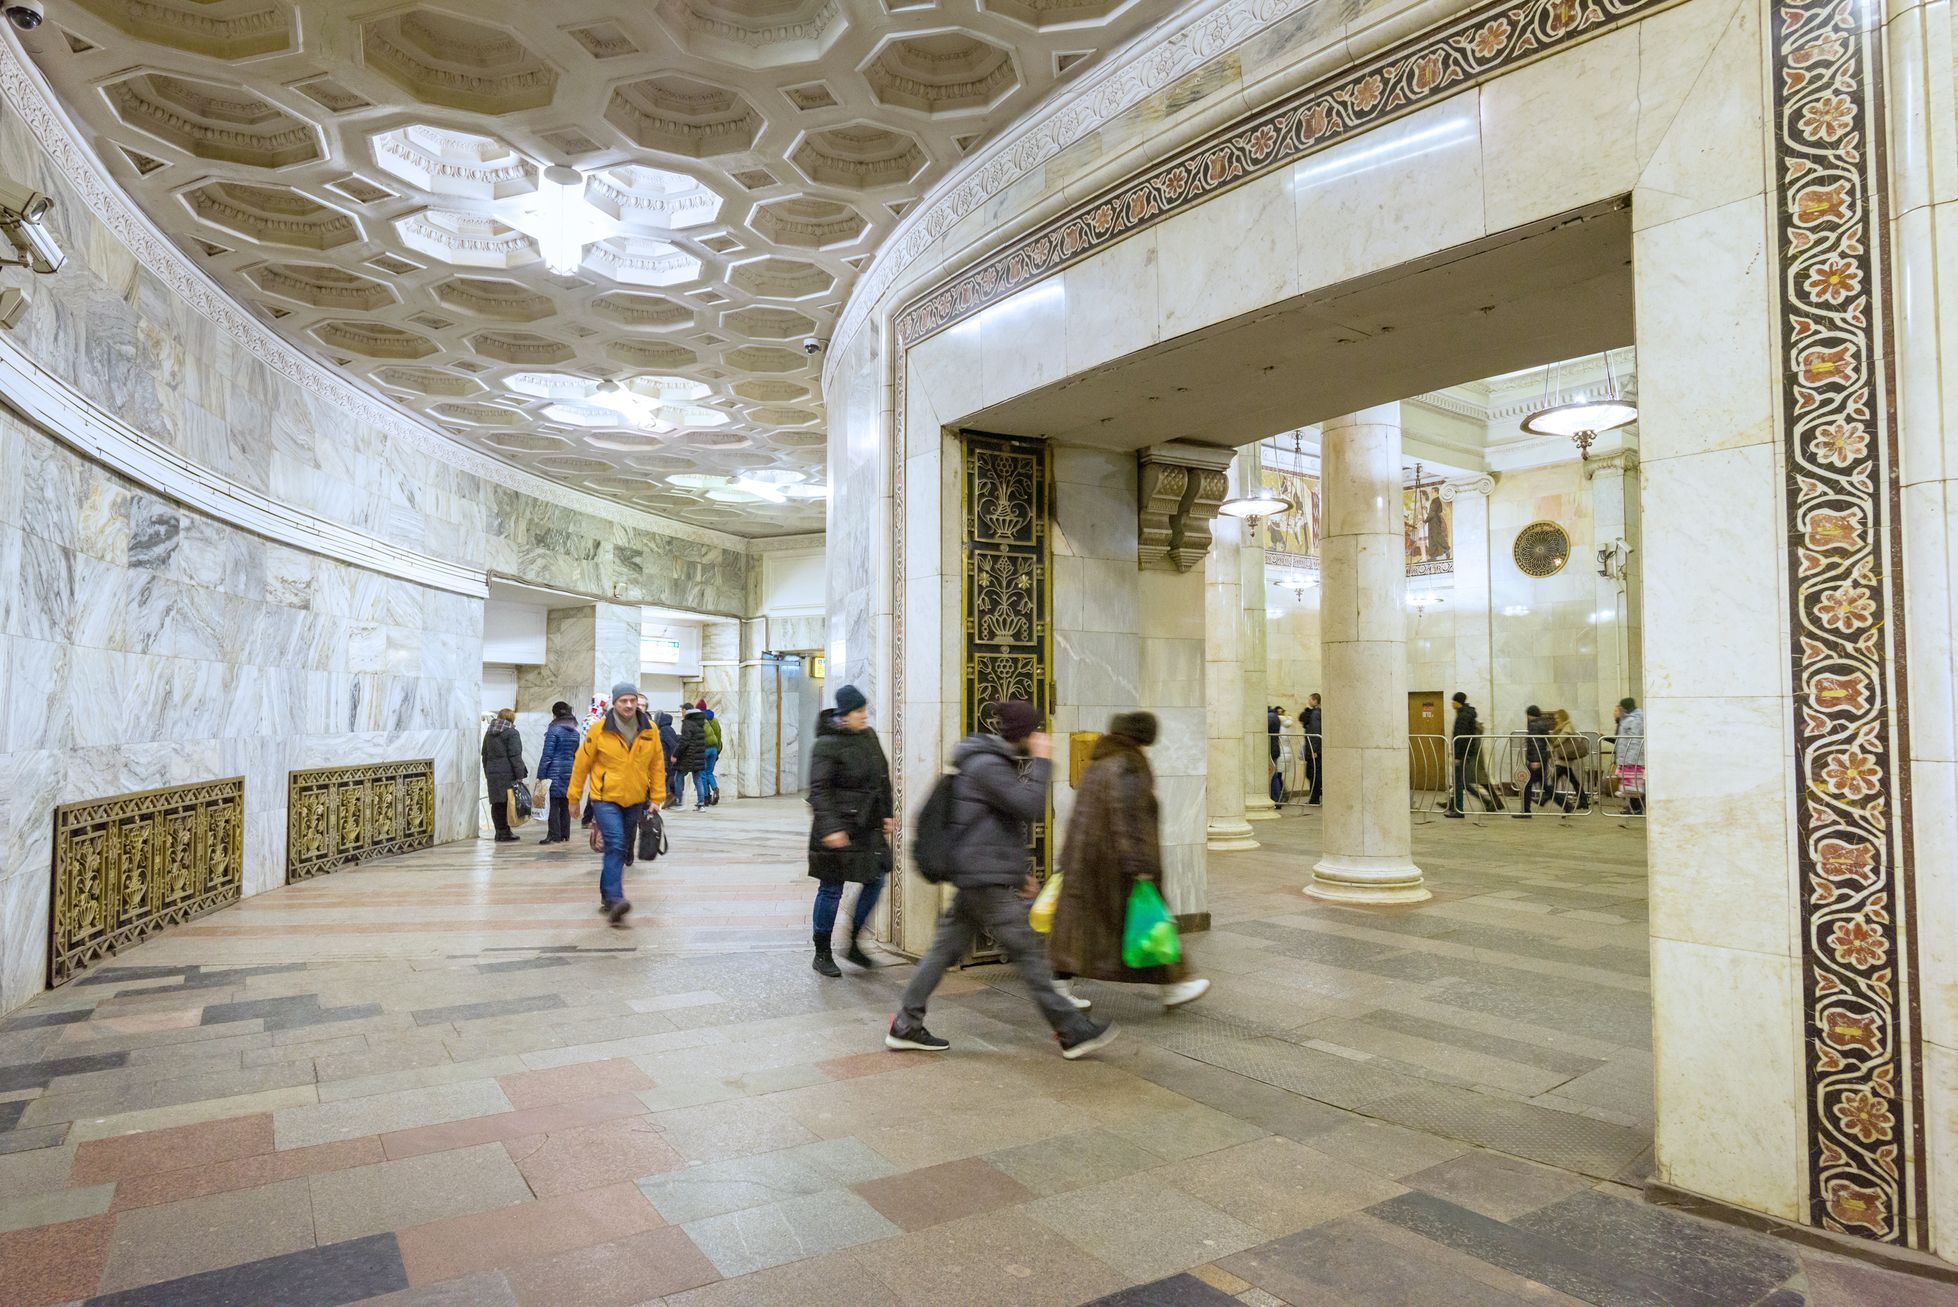 Jednorázové užití / Fotogalerie / Když metro připomíná luxusní palác. Podívejte se na krásy moskevské podzemky